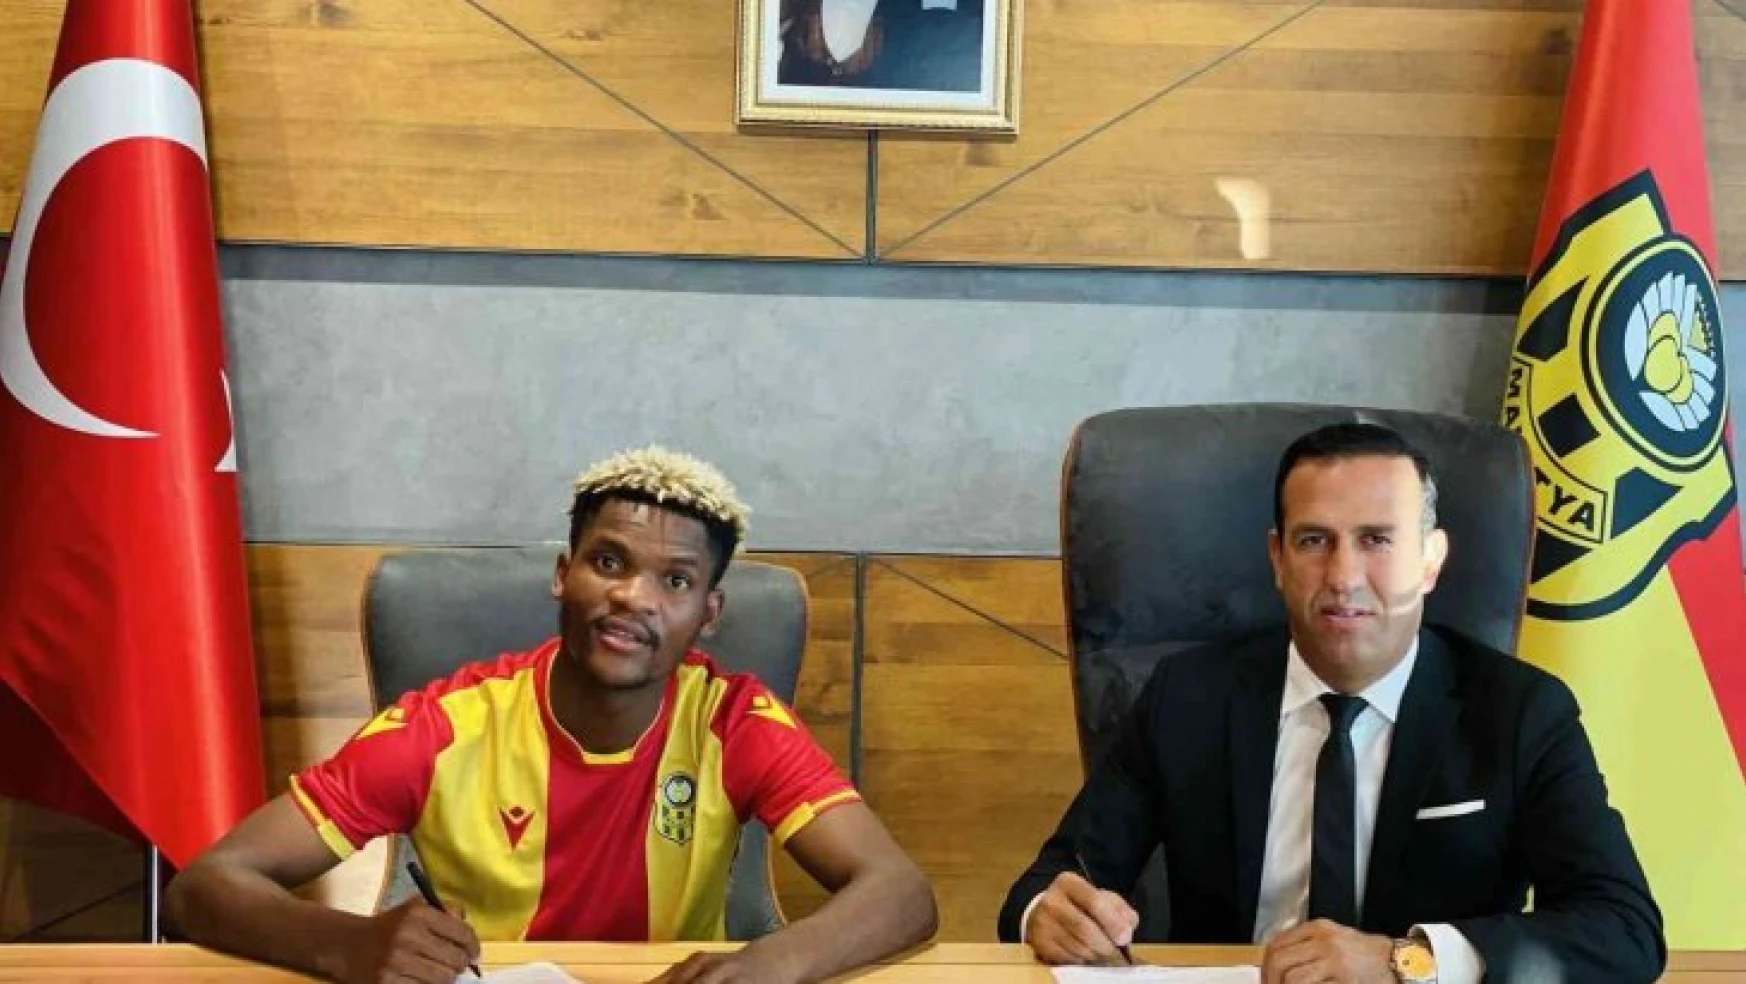 Yeni Malatyaspor, Didier Ndong ile yollarını ayırdı